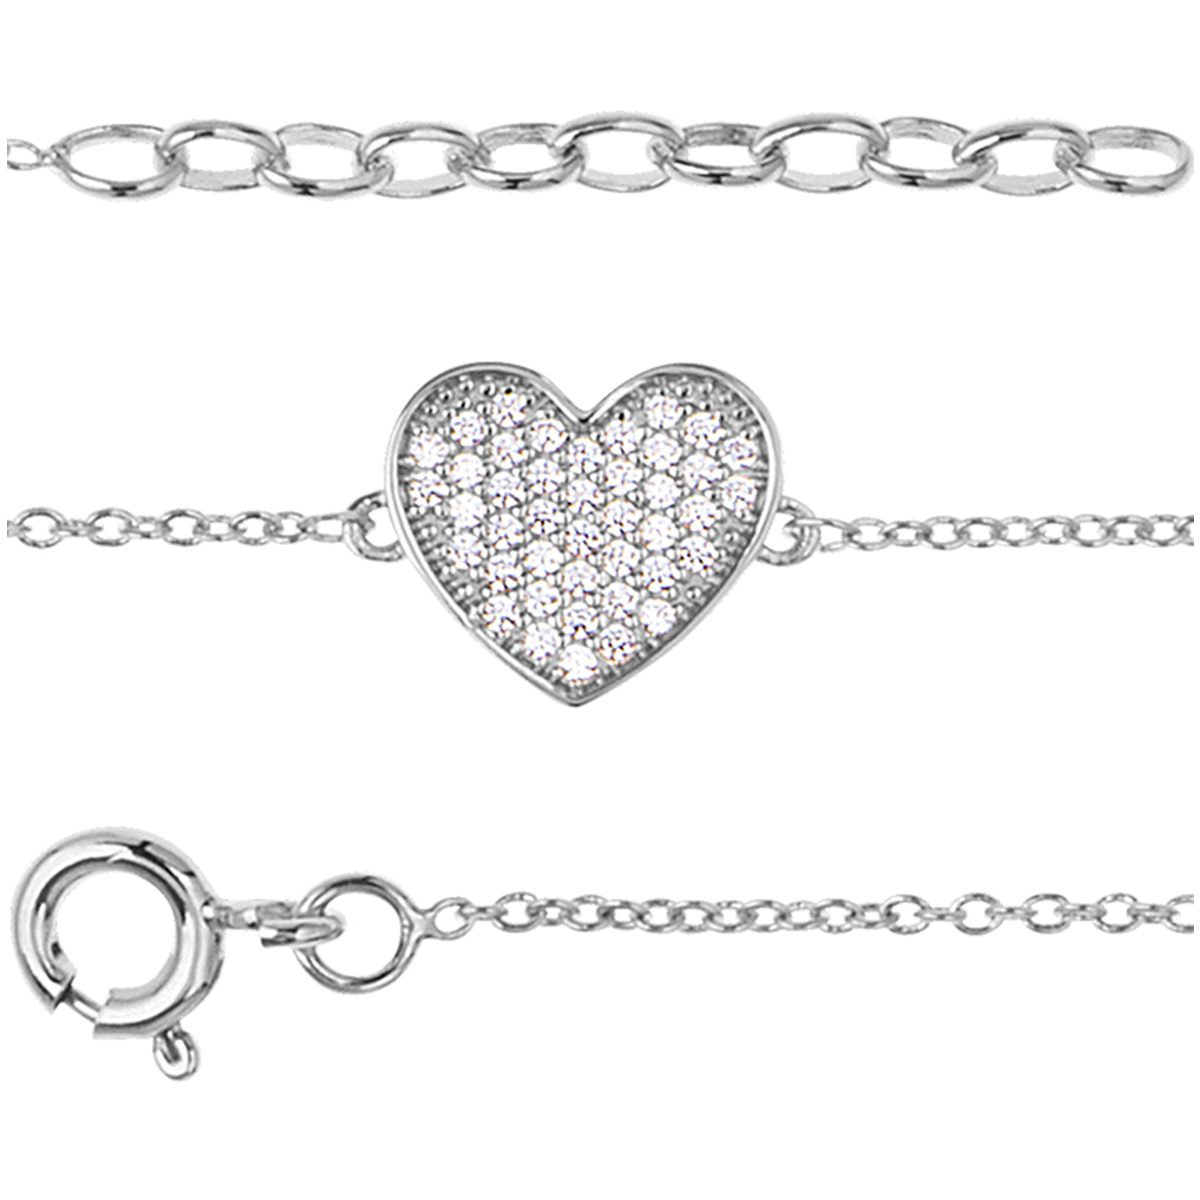 Bracelet argent \'Love\' blanc argenté (rhodié) - 19 cm, 10x10 mm - [Q9841]